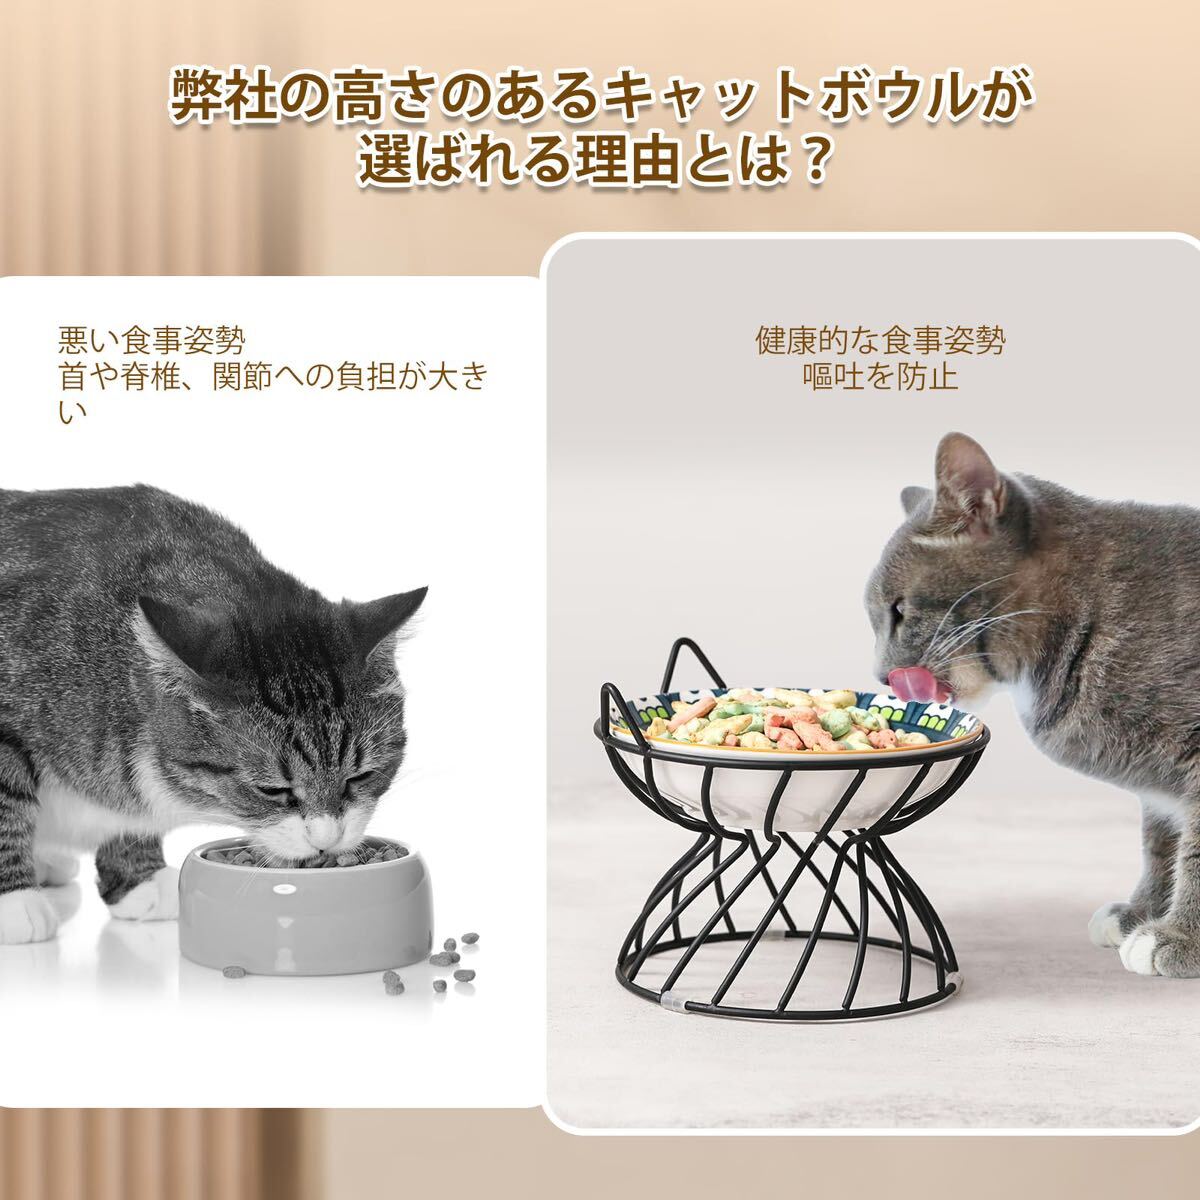 猫餌入れ食器 陶器 高め スタンド付き -滑り止め 猫用食器 おしゃれ ペットお皿 ペット用品 人気 猫の食器 食べやすい ネコ用皿